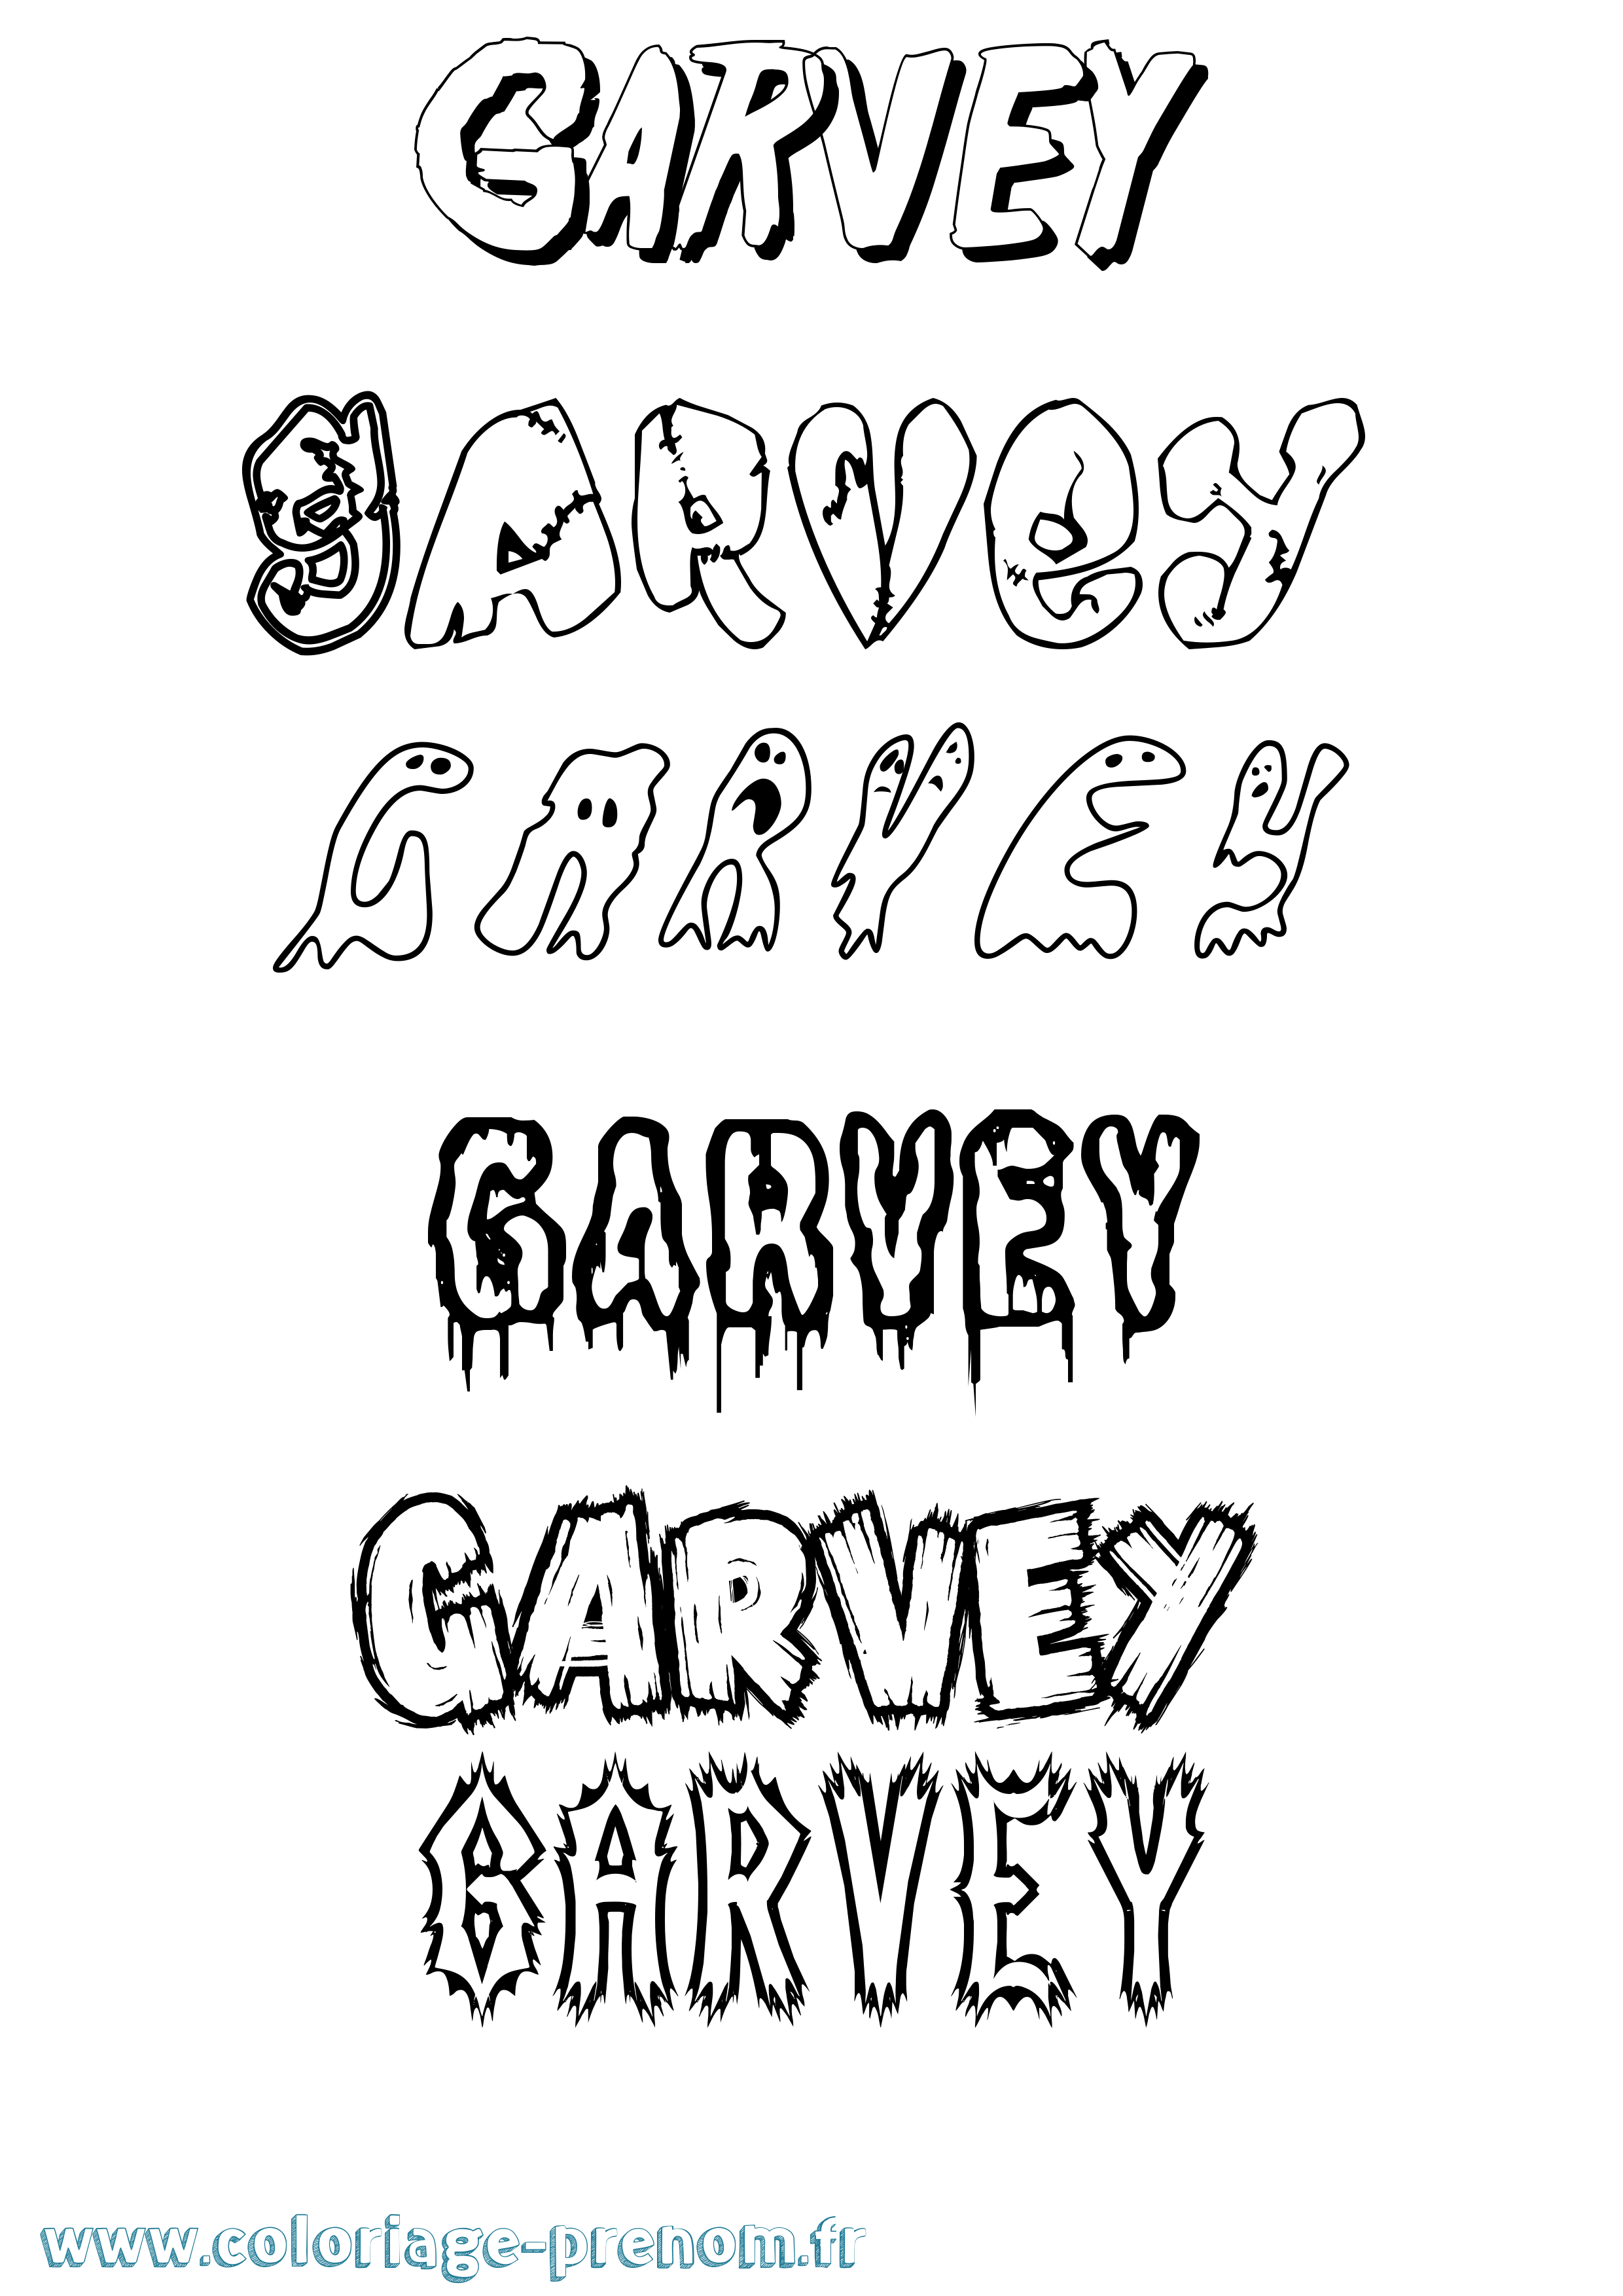 Coloriage prénom Garvey Frisson